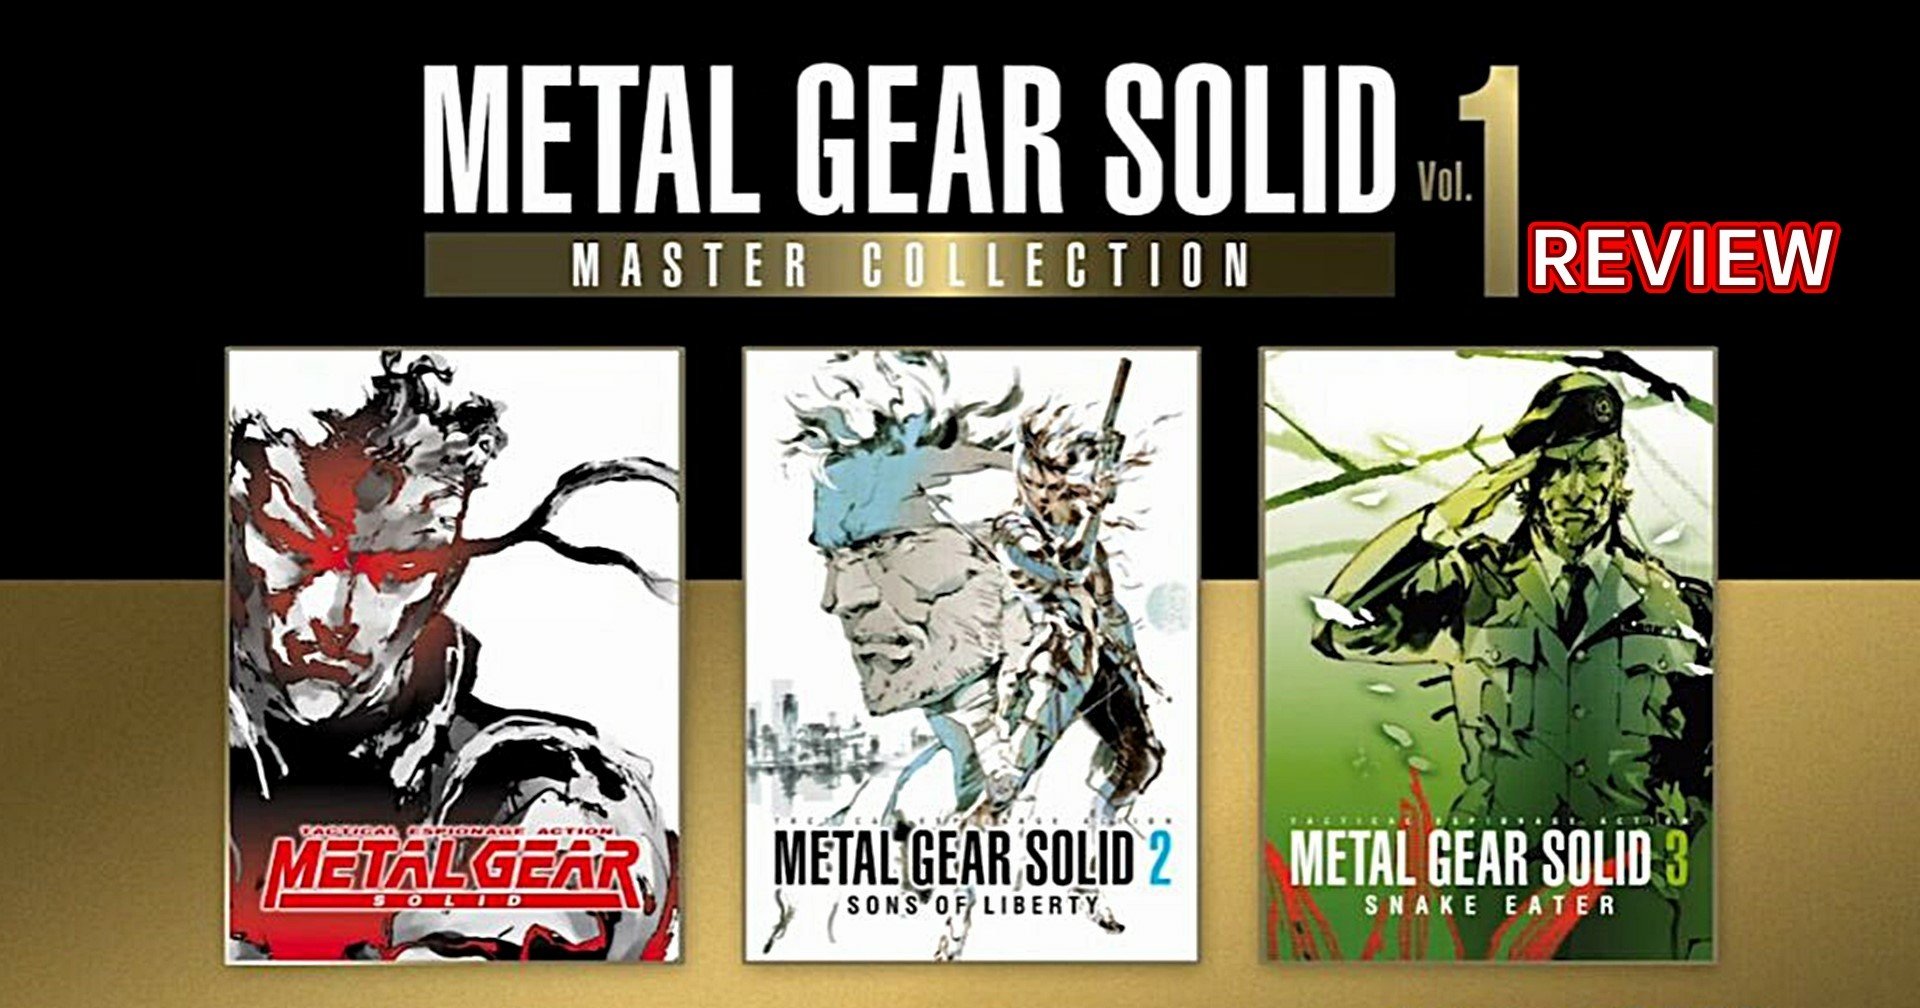 [รีวิวเกม] Metal Gear Solid: Master Collection Vol. 1 รวมฮิตเกมสายลับในตำนานที่ไม่ค่อยลงทุน